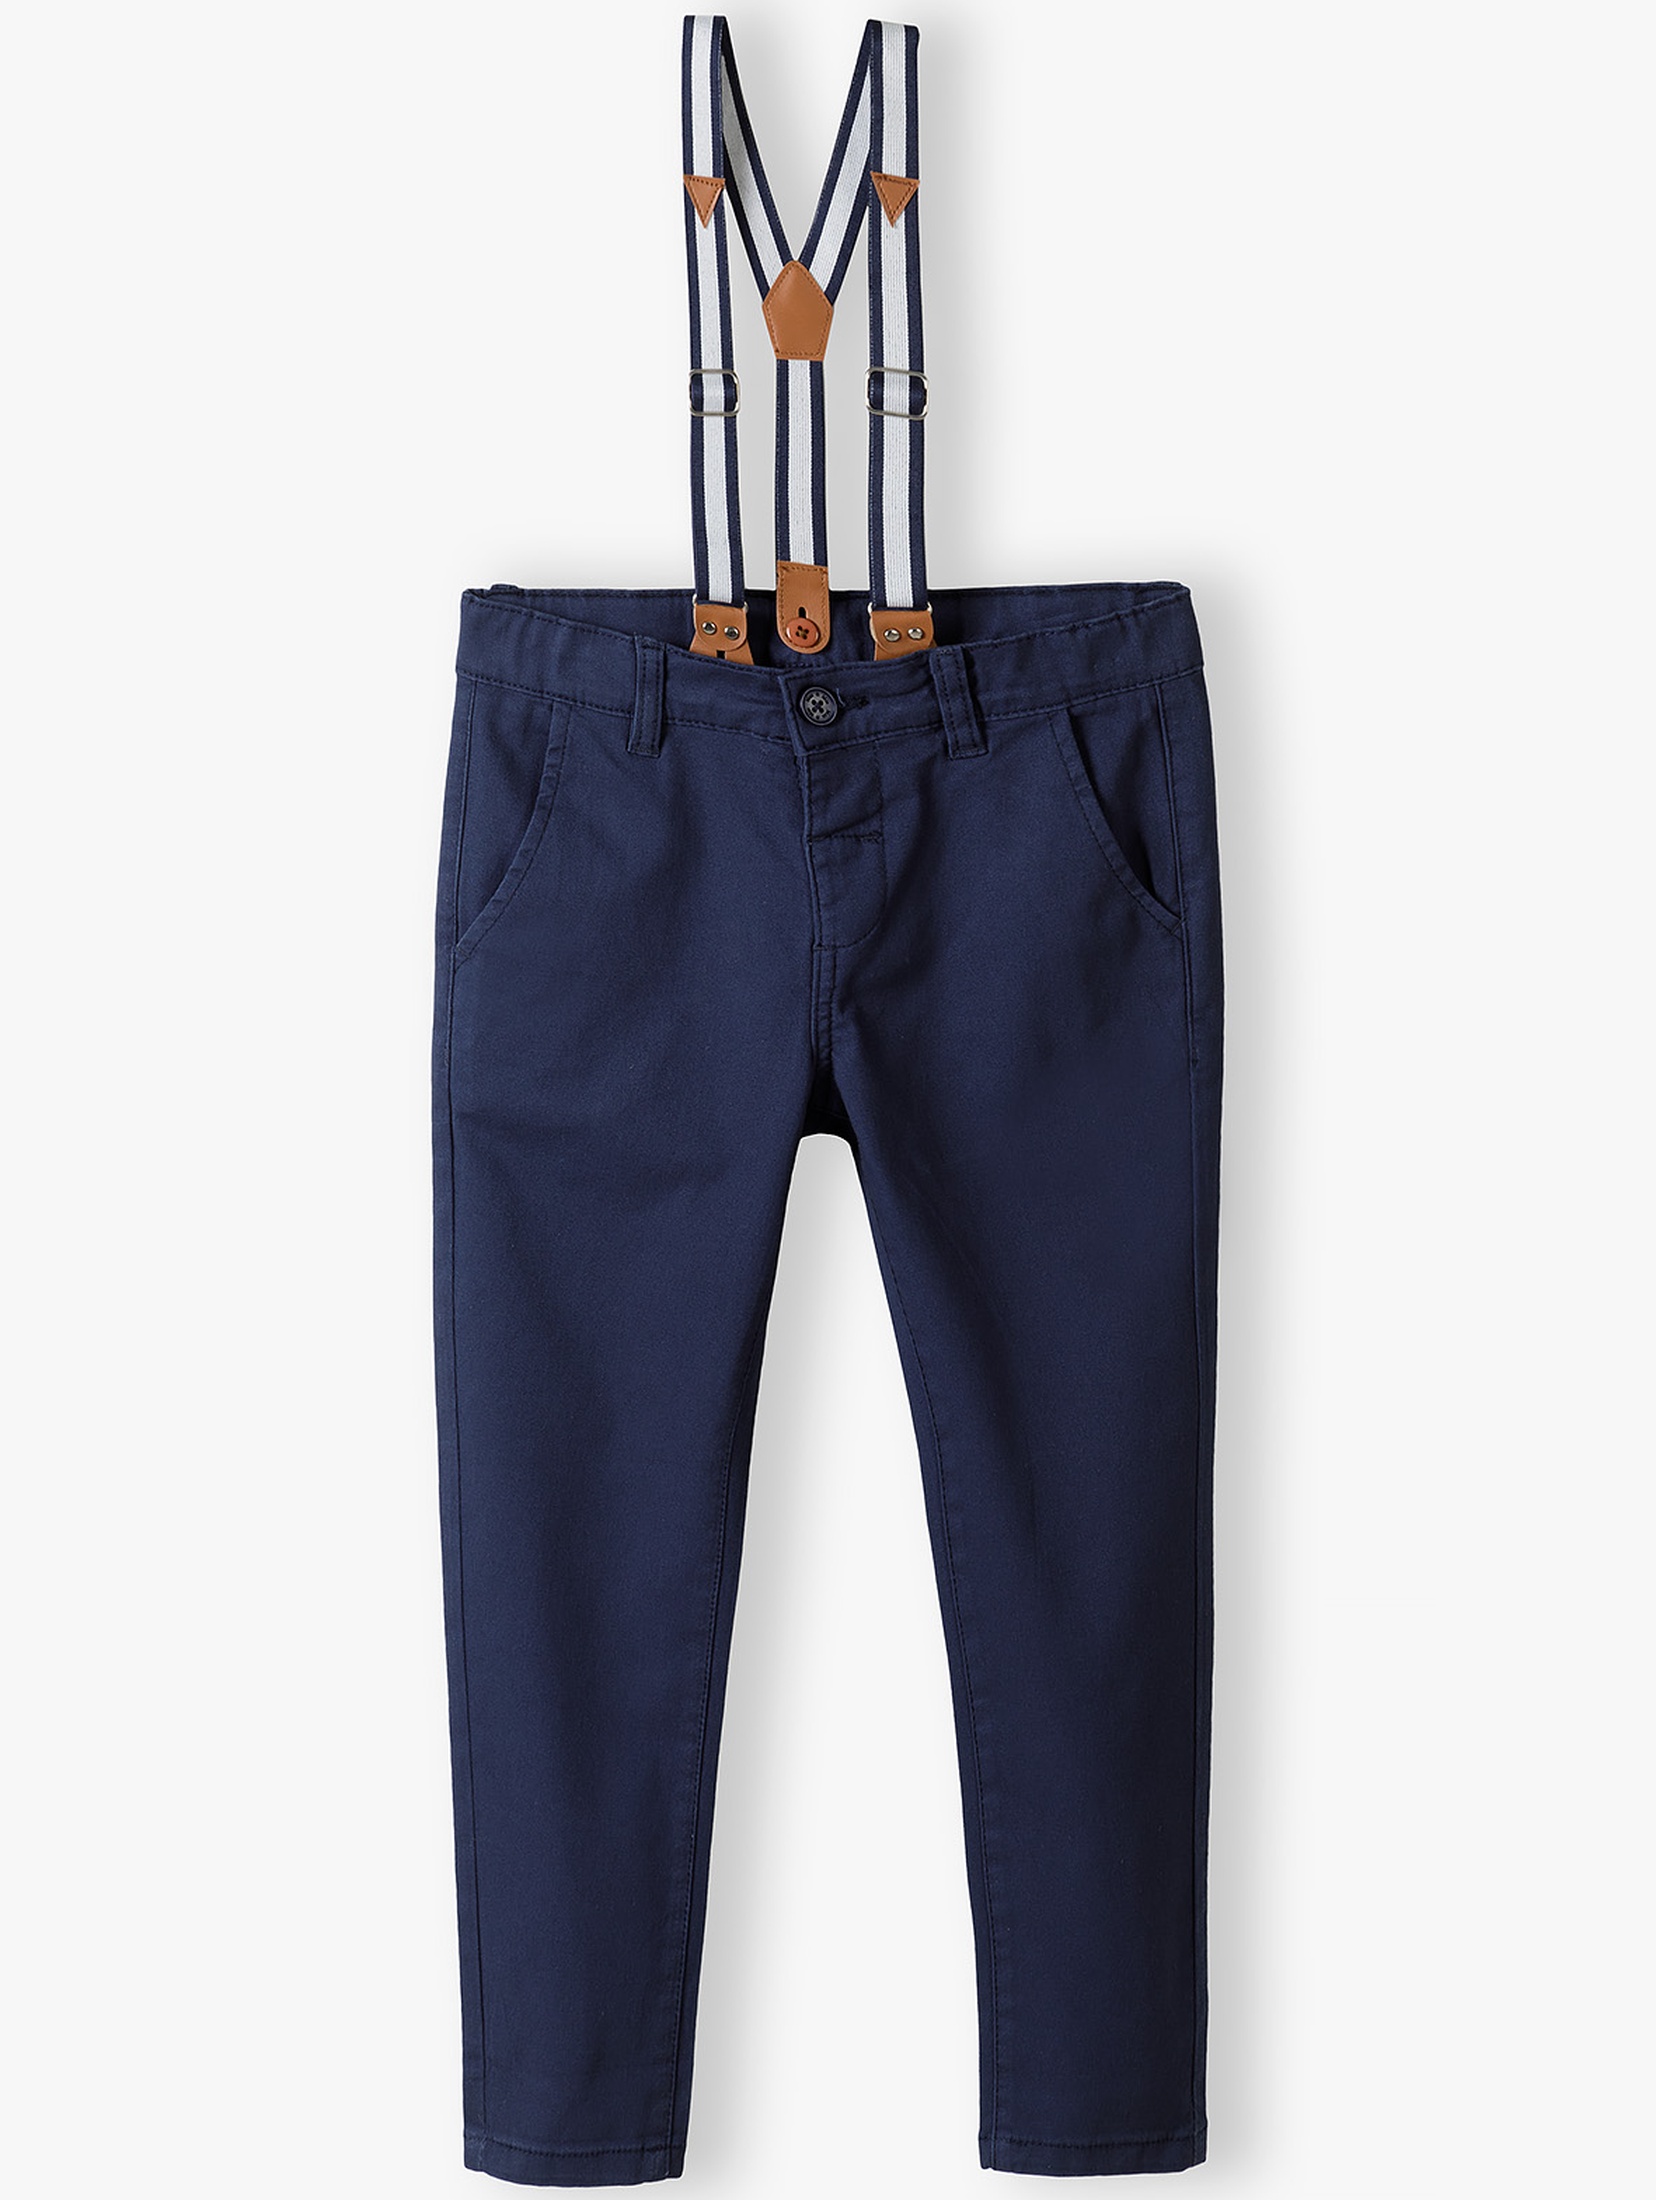 Granatowe spodnie dla chłopca regular z szelkami